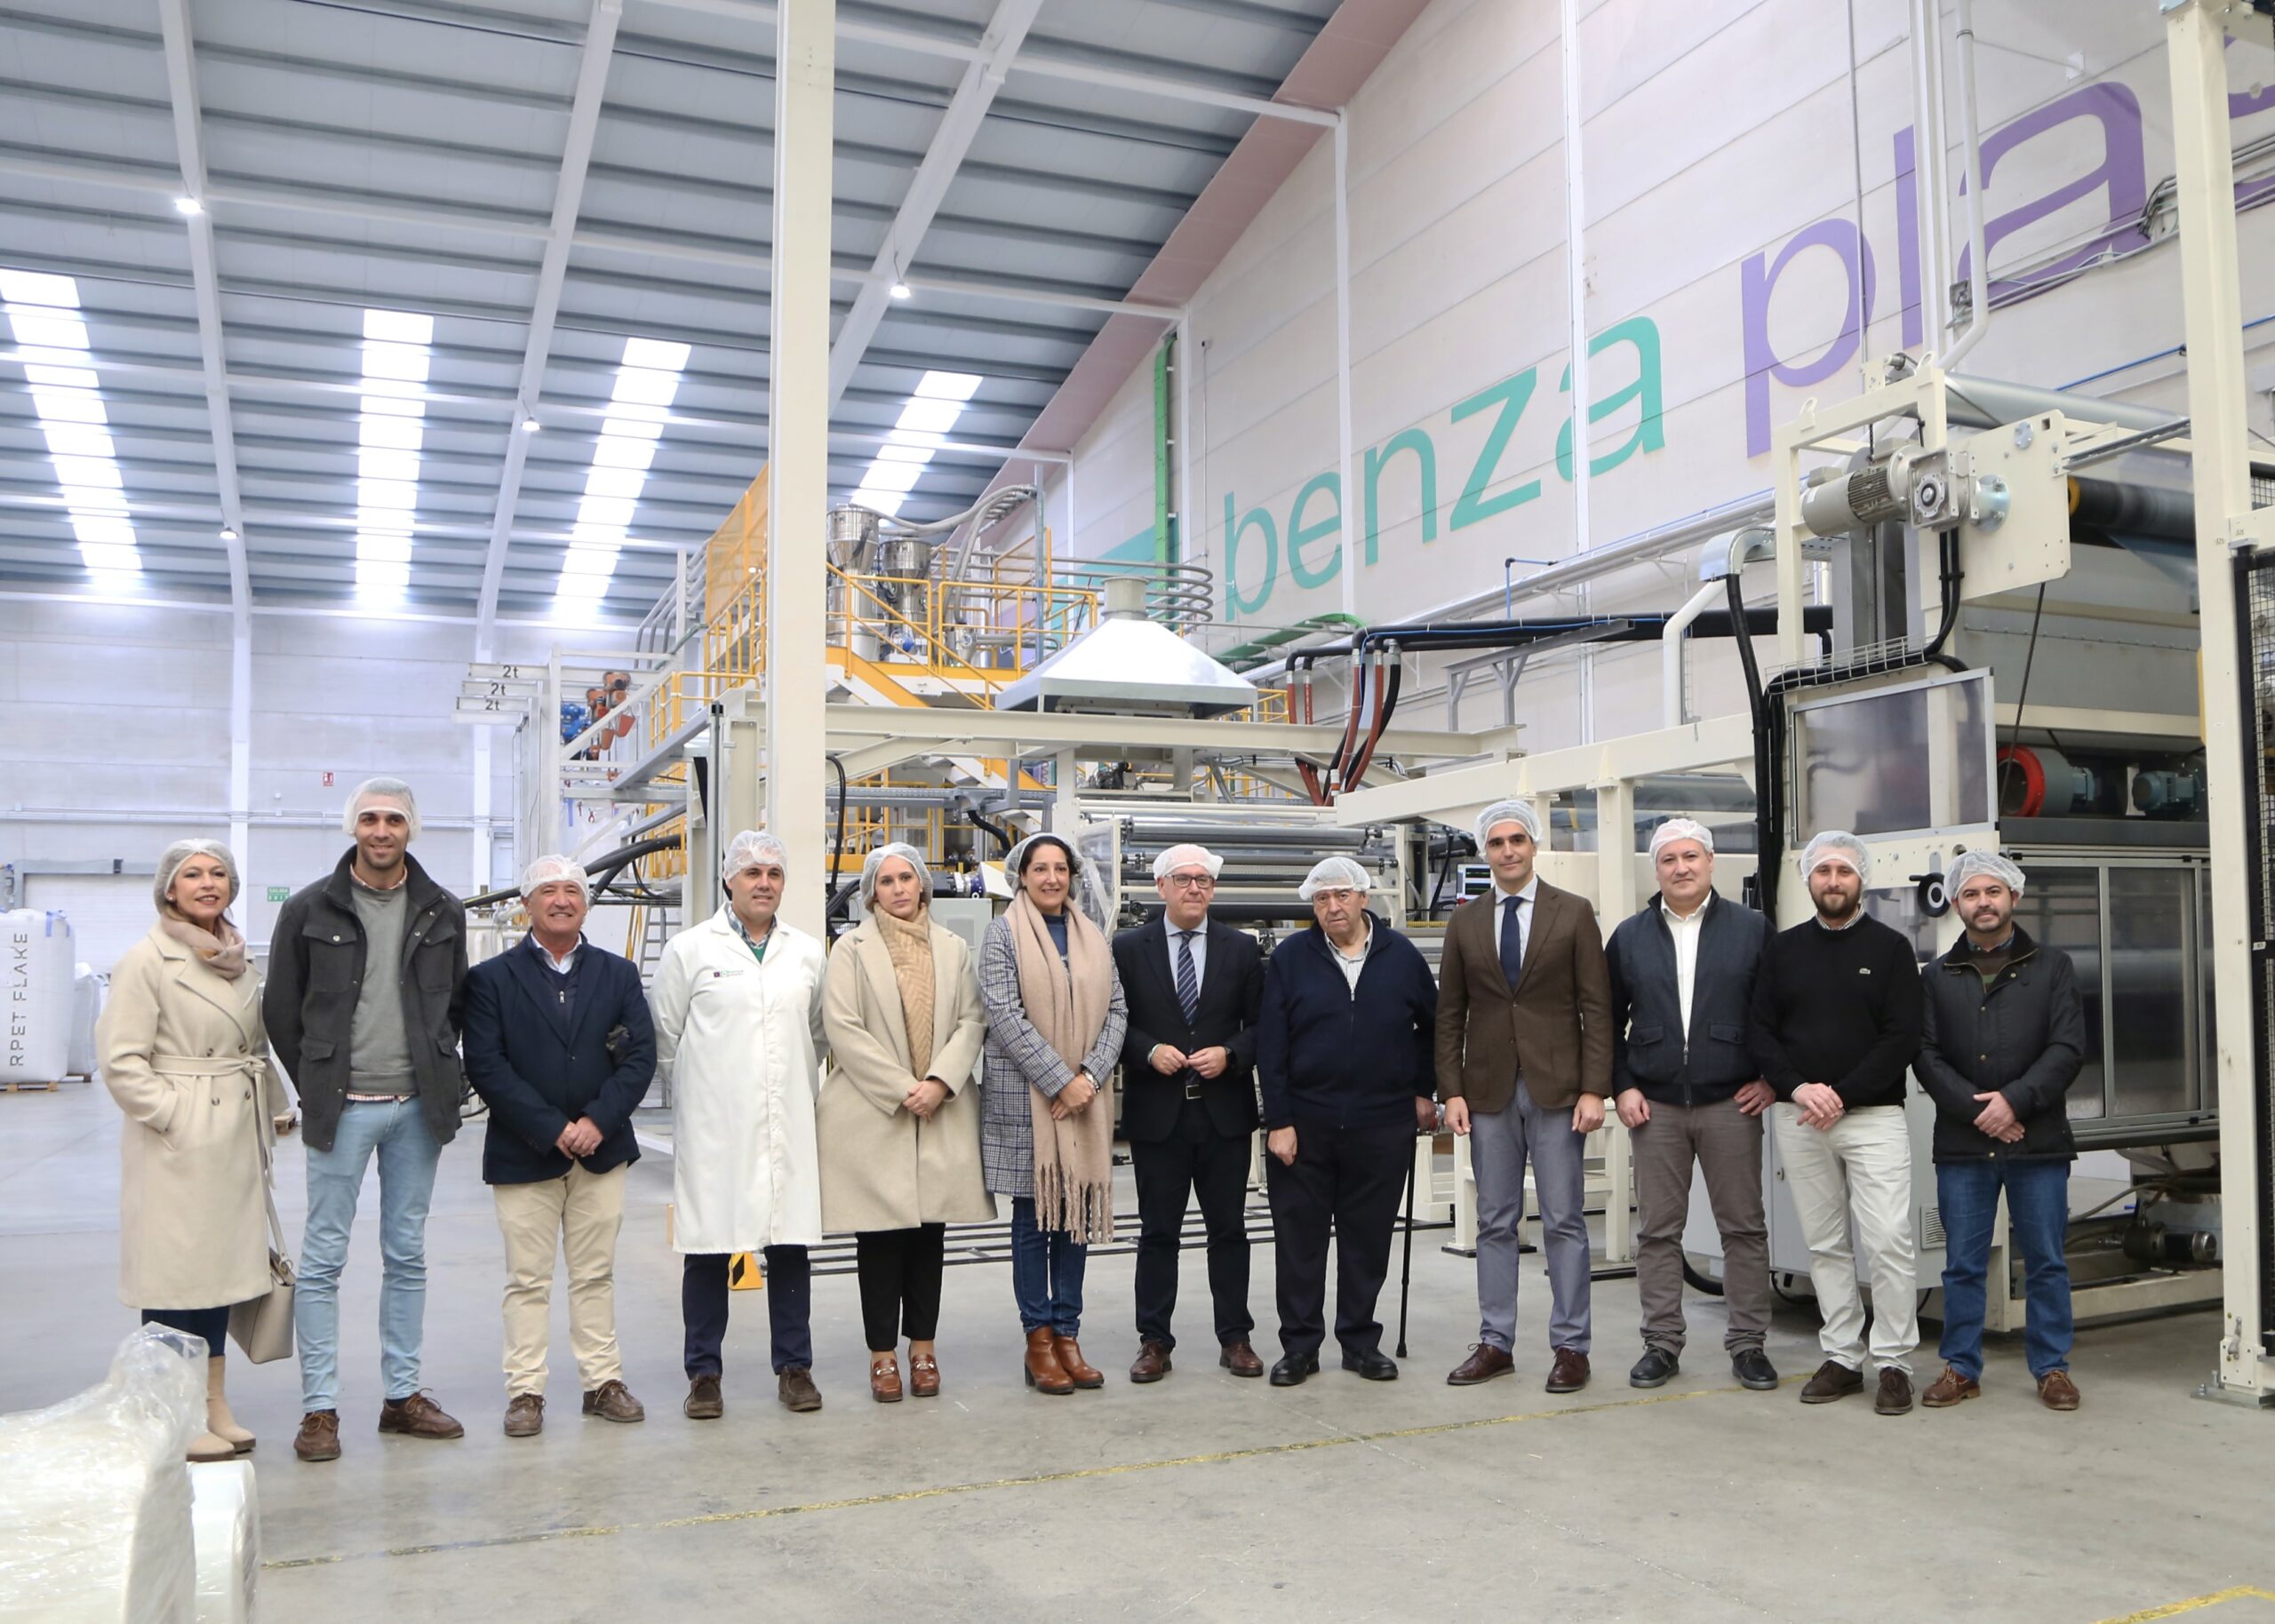 Visita institucional a Benzaplastic, empresa que más ayuda recibe de la Junta en la provincia por sobrecoste energético